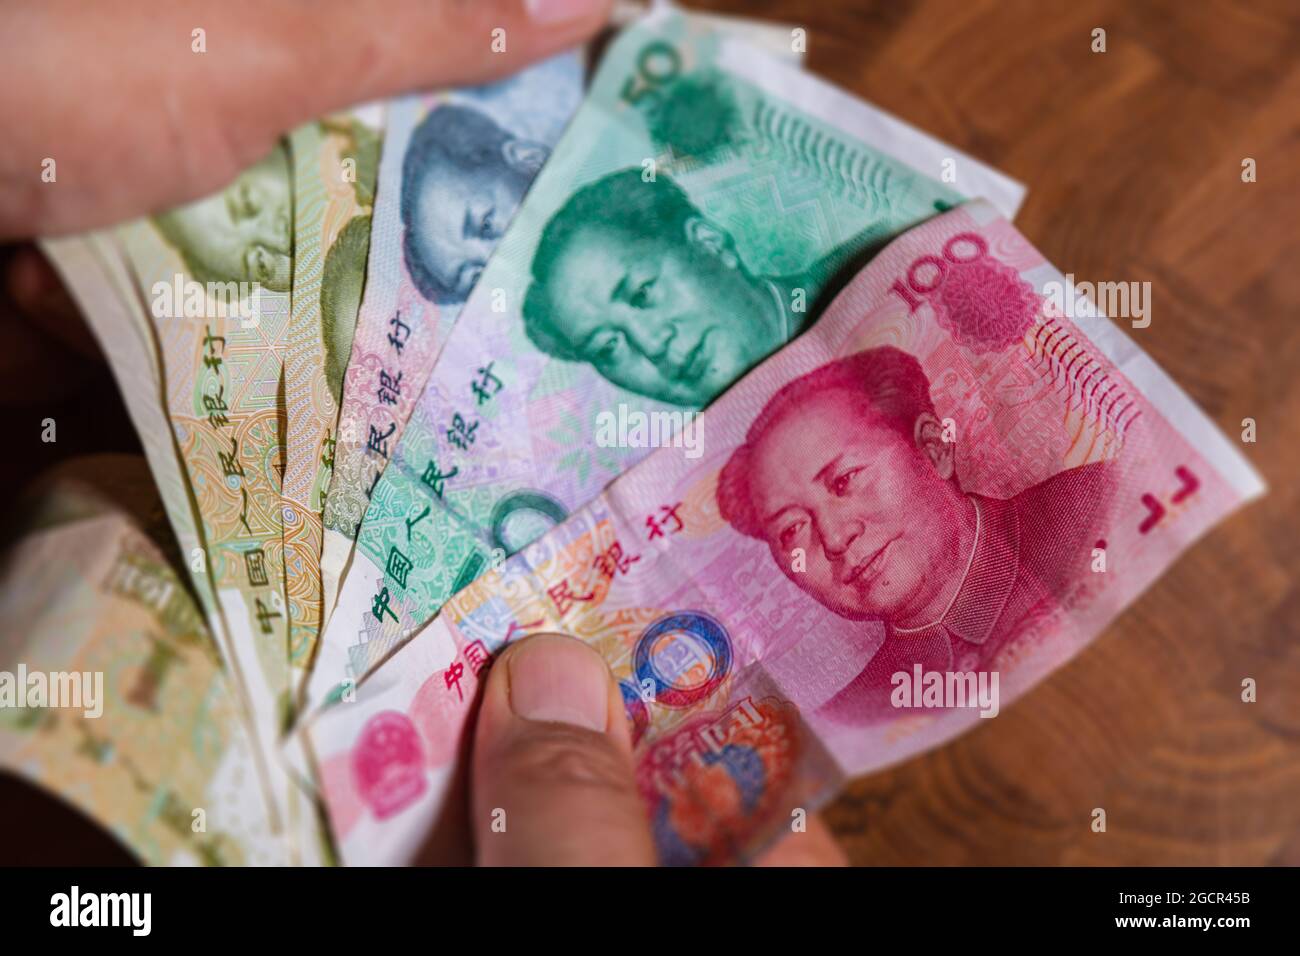 La main masculine montre le renminbi ou le yuan chinois ou le billet de banque en RMB abrégé, la monnaie officielle de la république populaire de chine. Sur l'avant du portr Banque D'Images